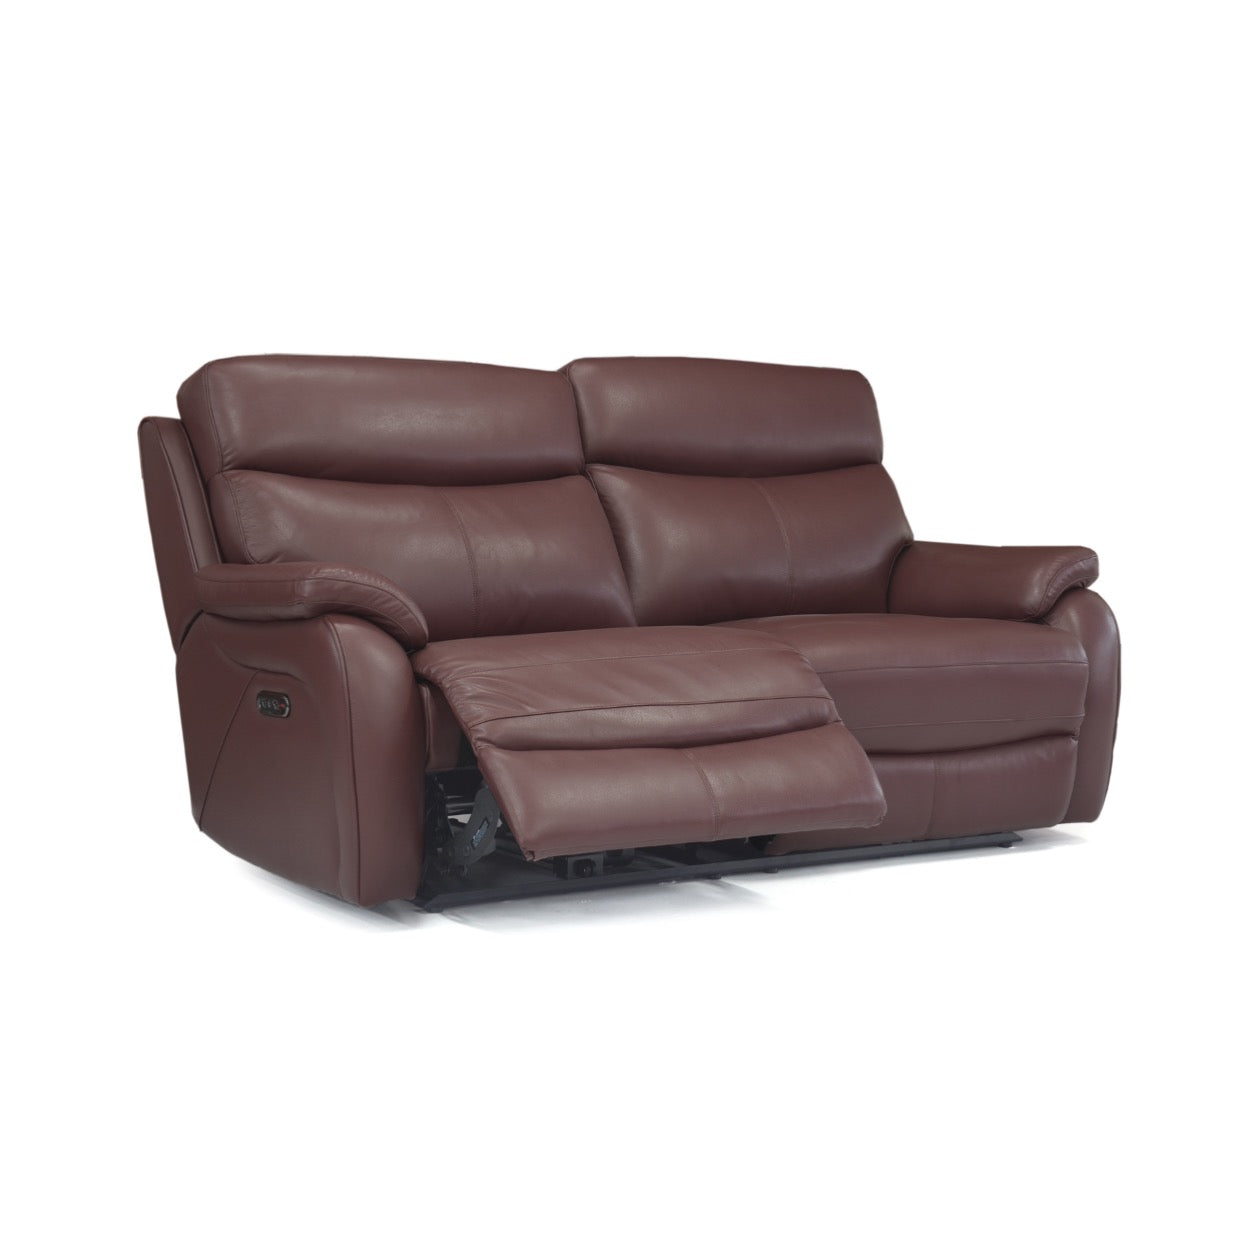 La-Z-Boy Kendra 3 Seater Power Reclining Sofa With USB